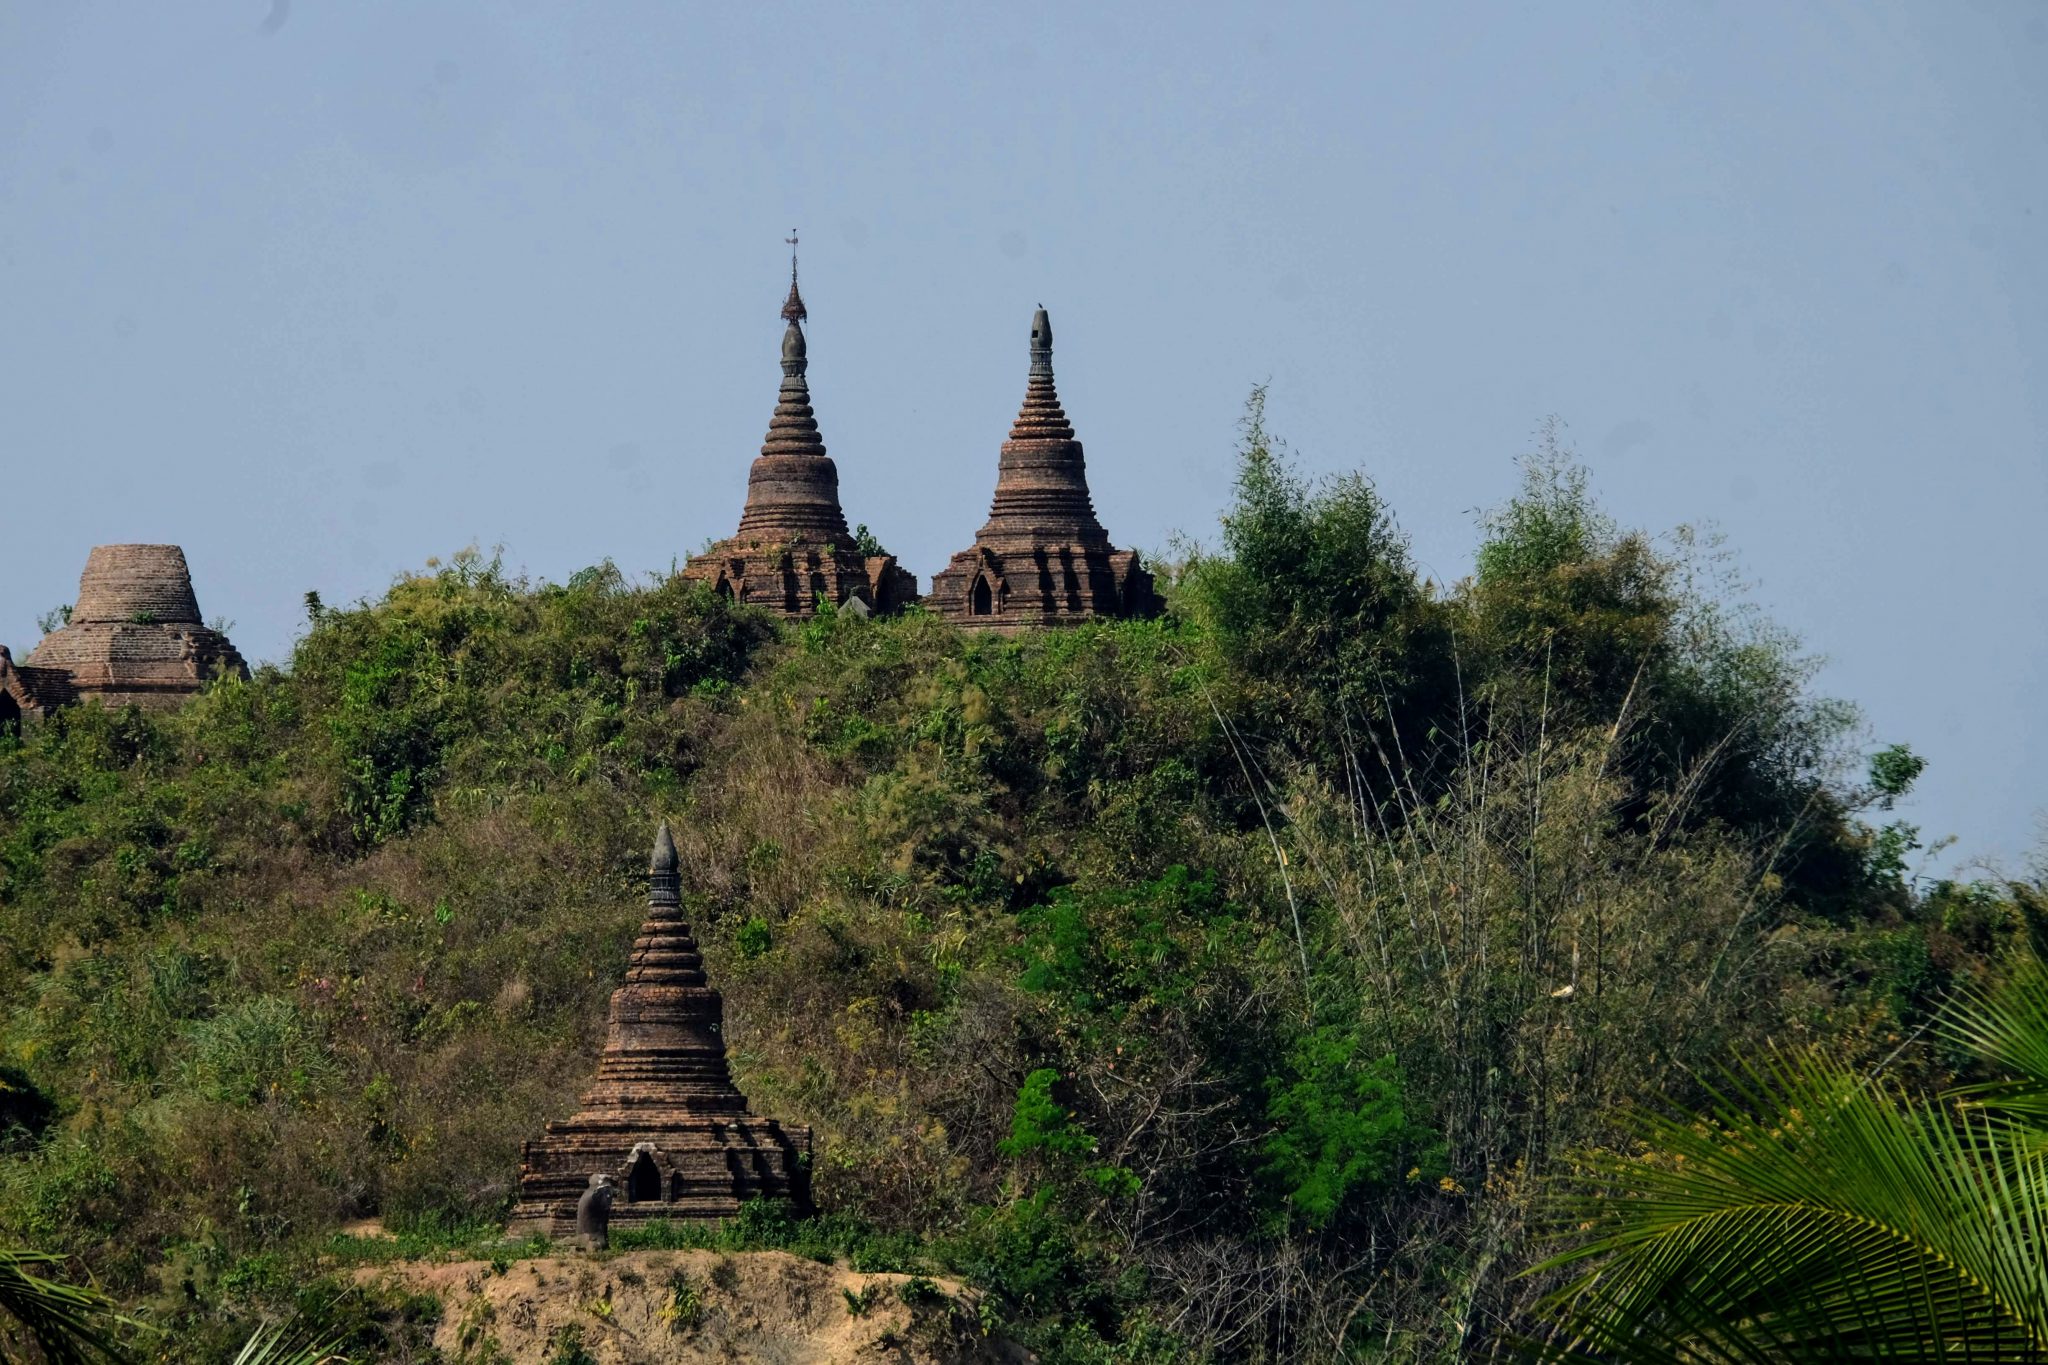 Temples at Mrauk U, Myanmar